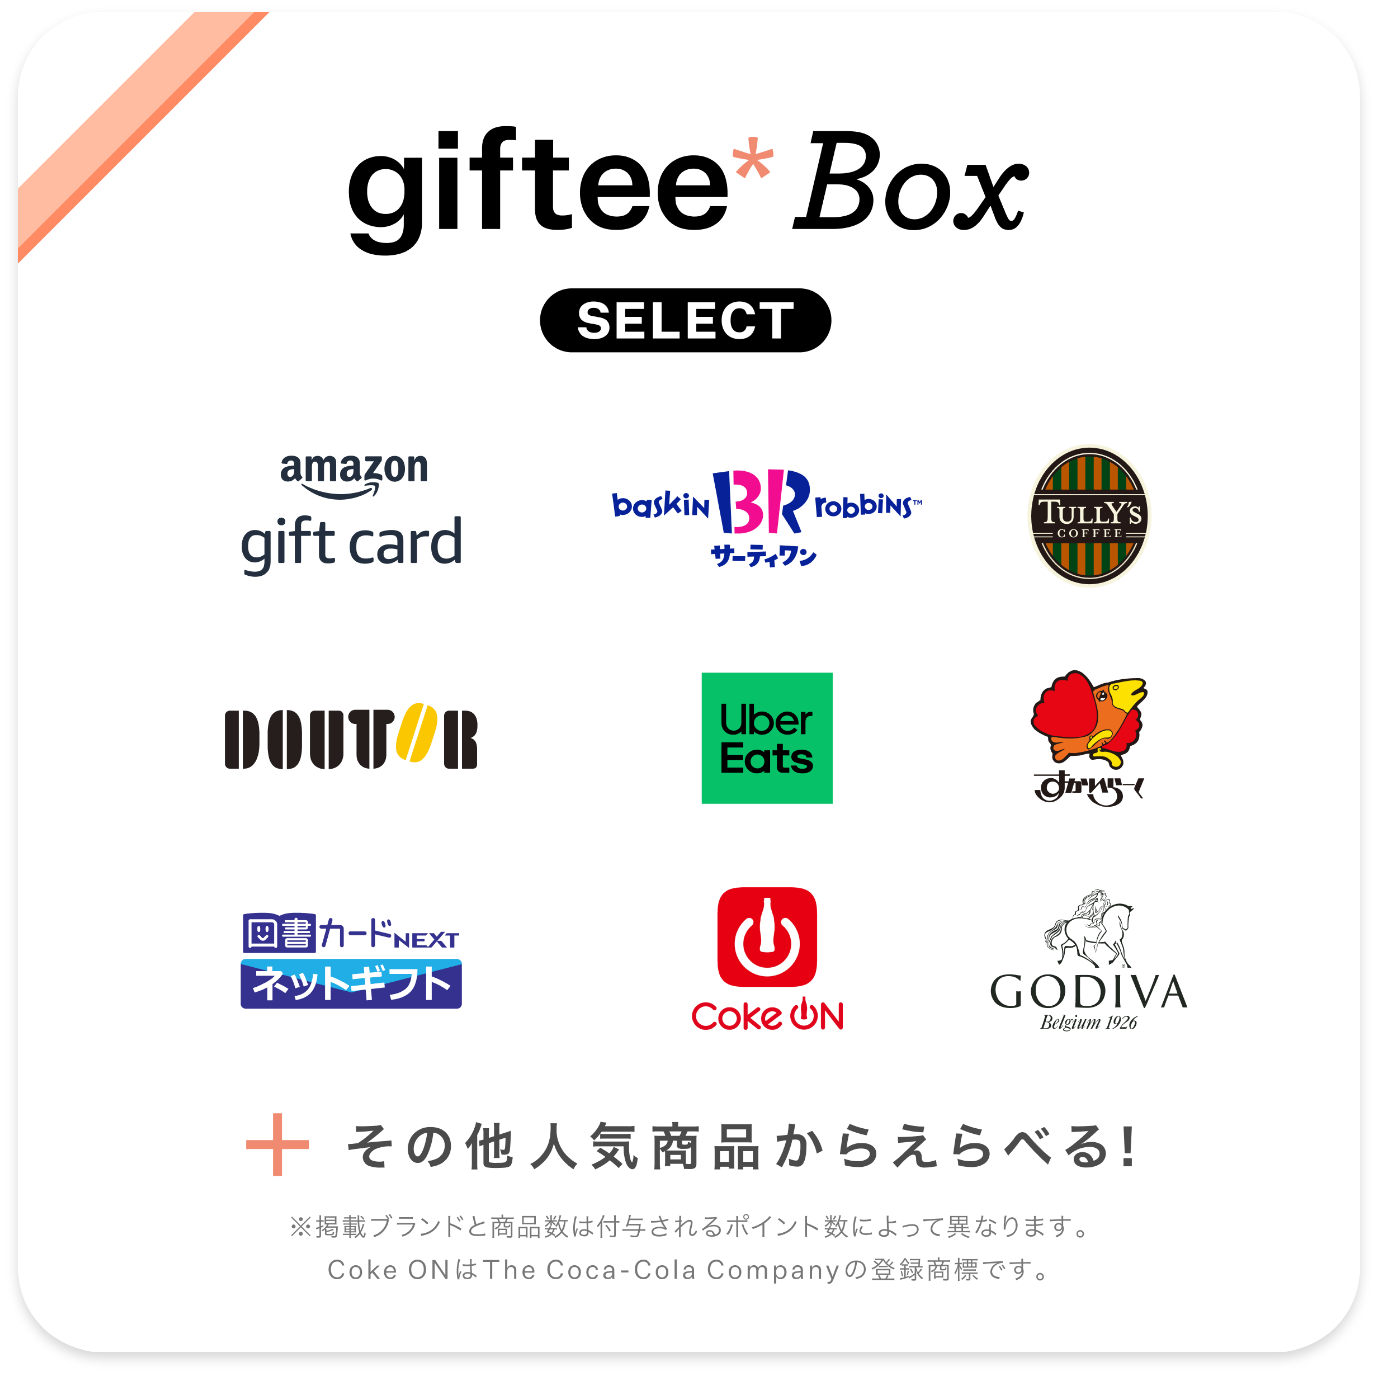 giftee*box Select